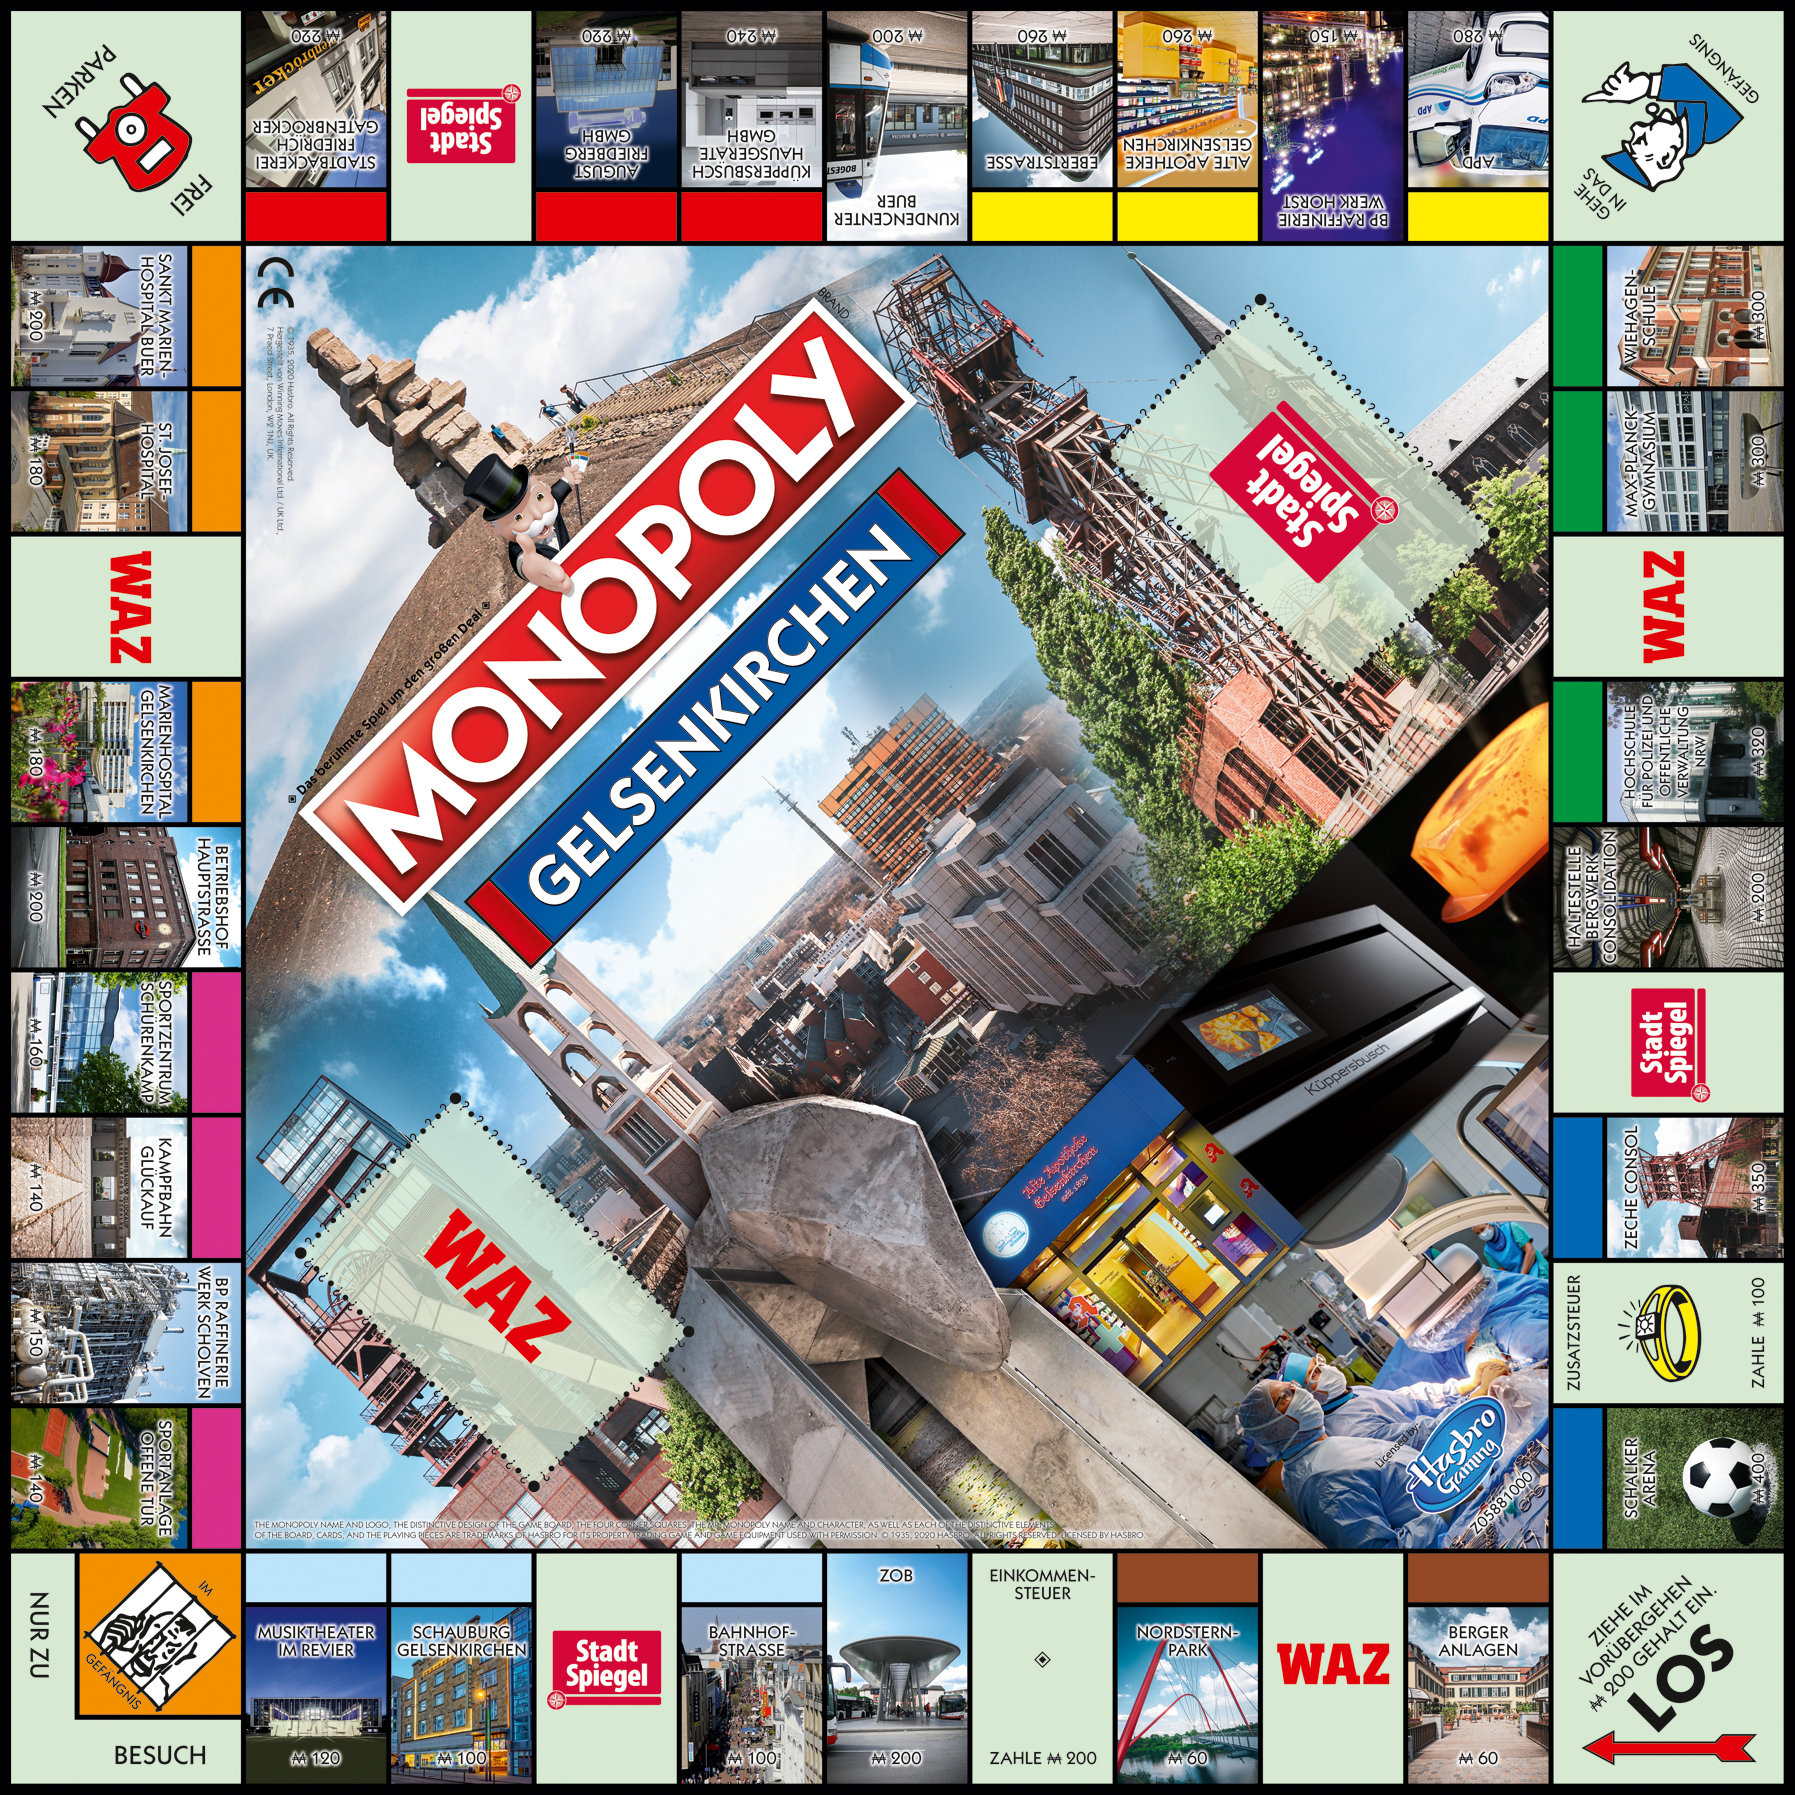 WINNING MOVES Brettspiel Gelsenkirchen Monopoly